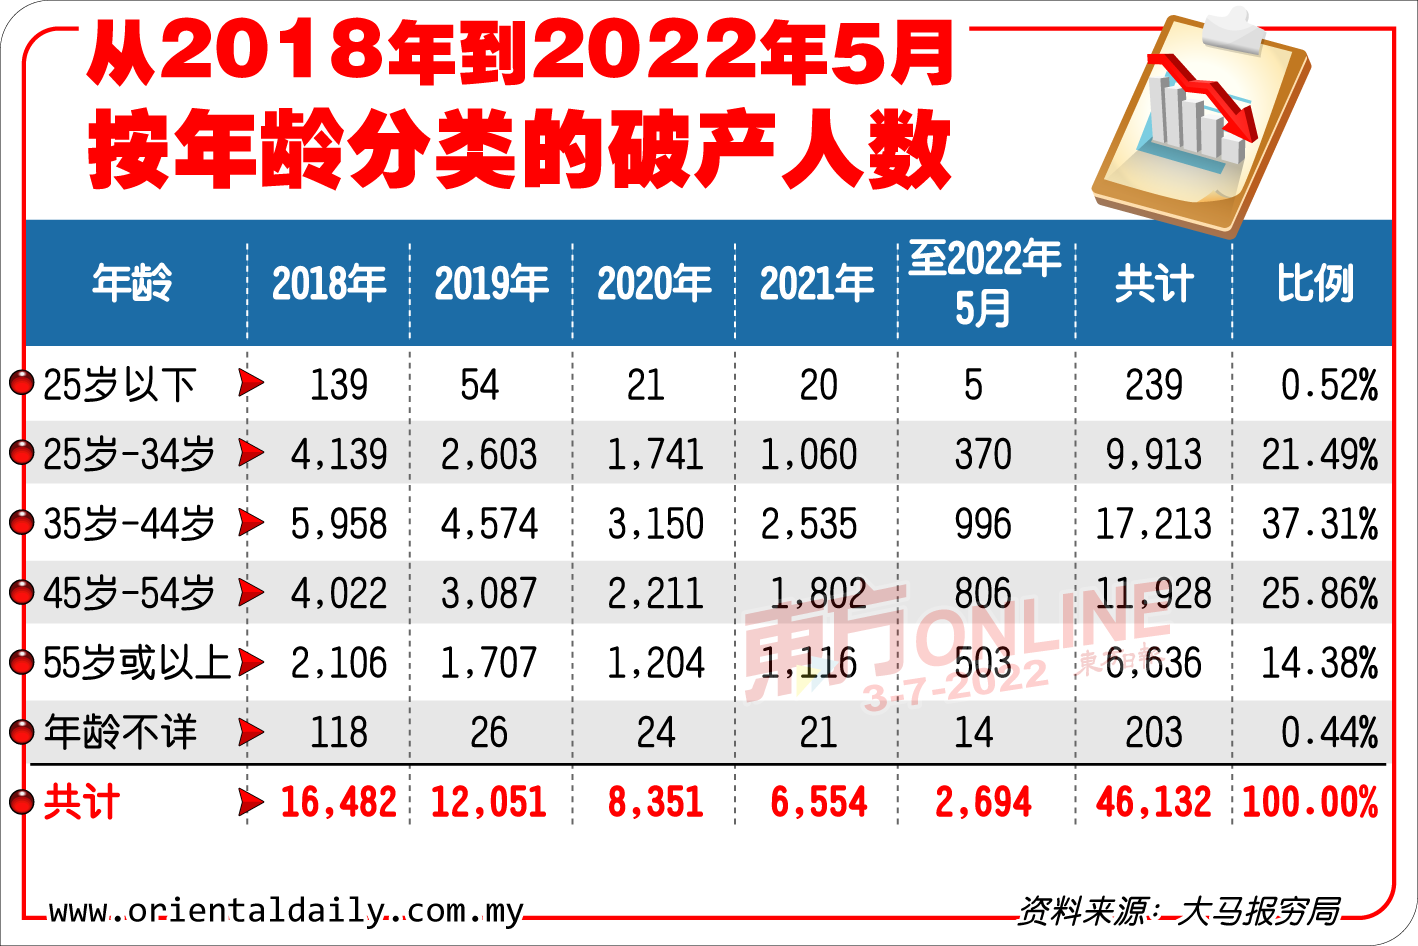 表一：从 2018 年到 2022 年 5 月按年龄分类的破产人数。